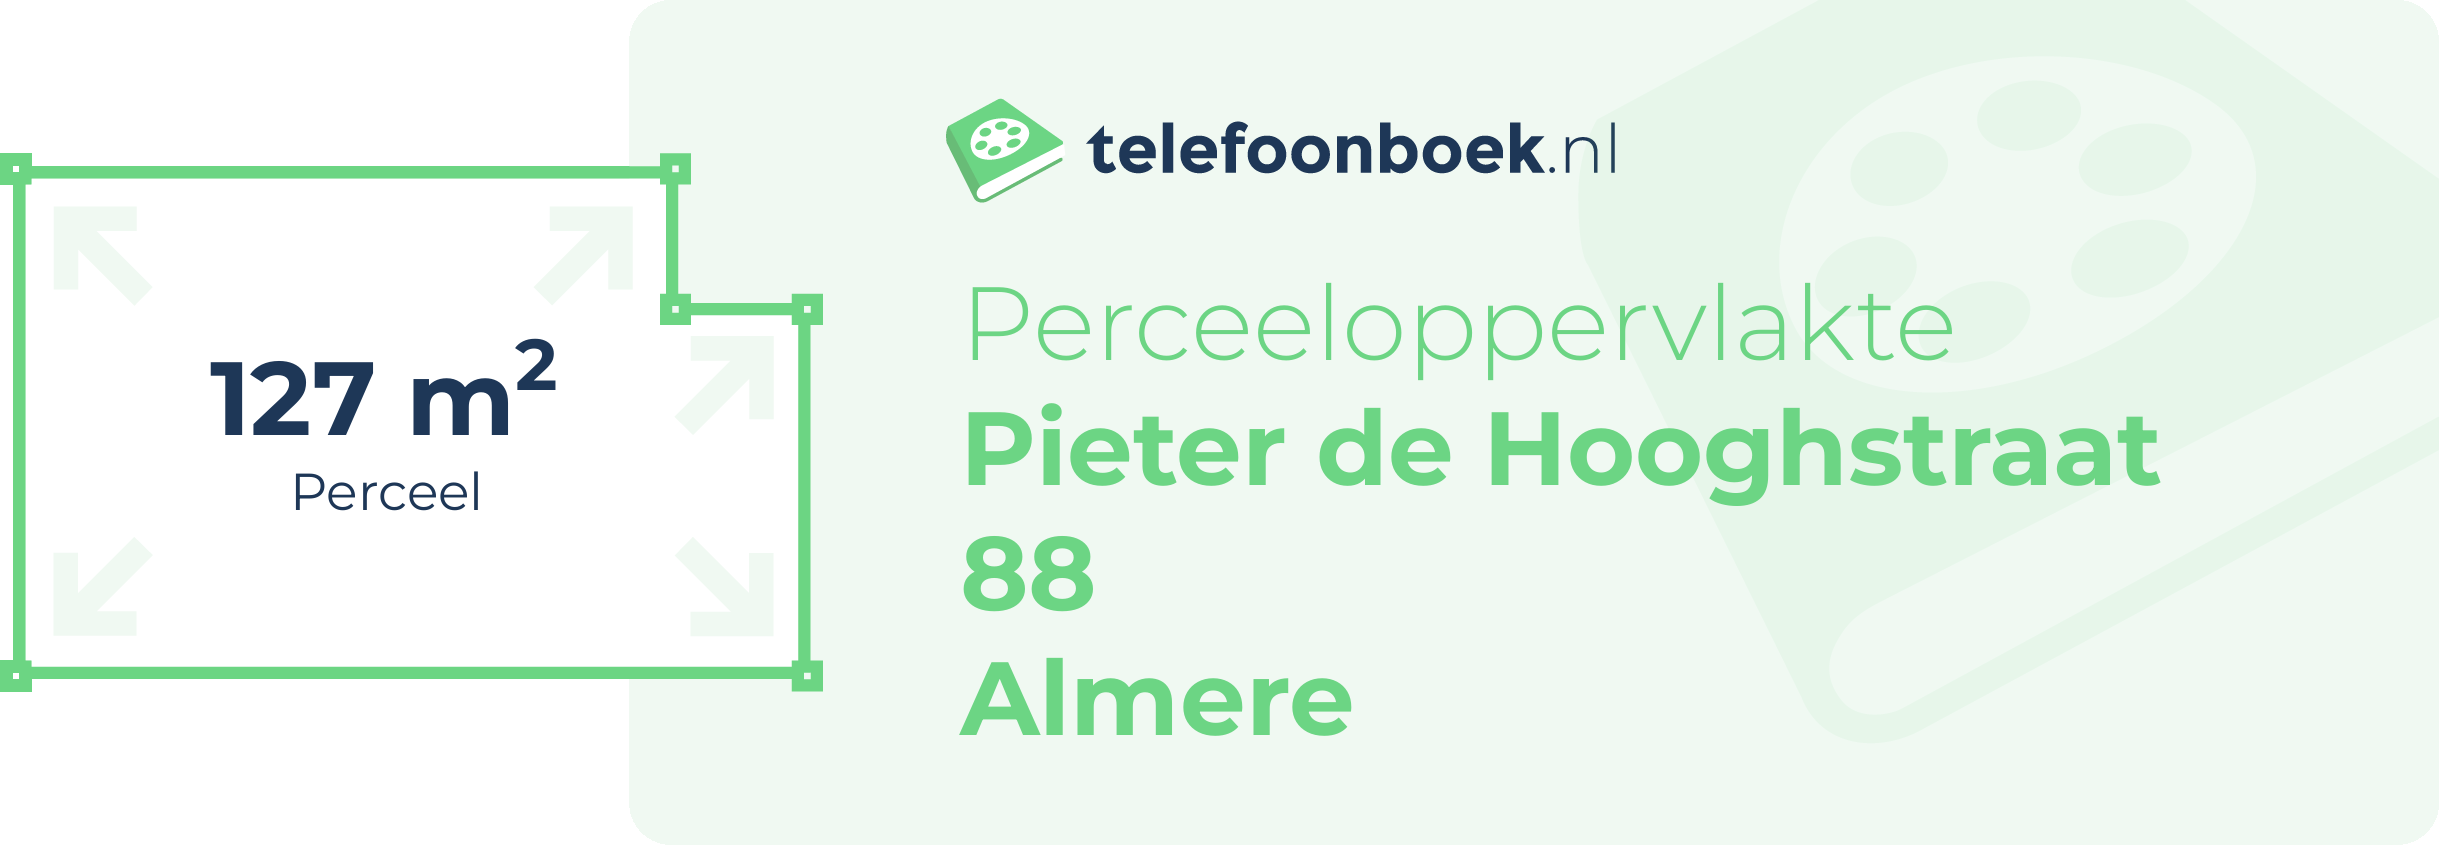 Perceeloppervlakte Pieter De Hooghstraat 88 Almere